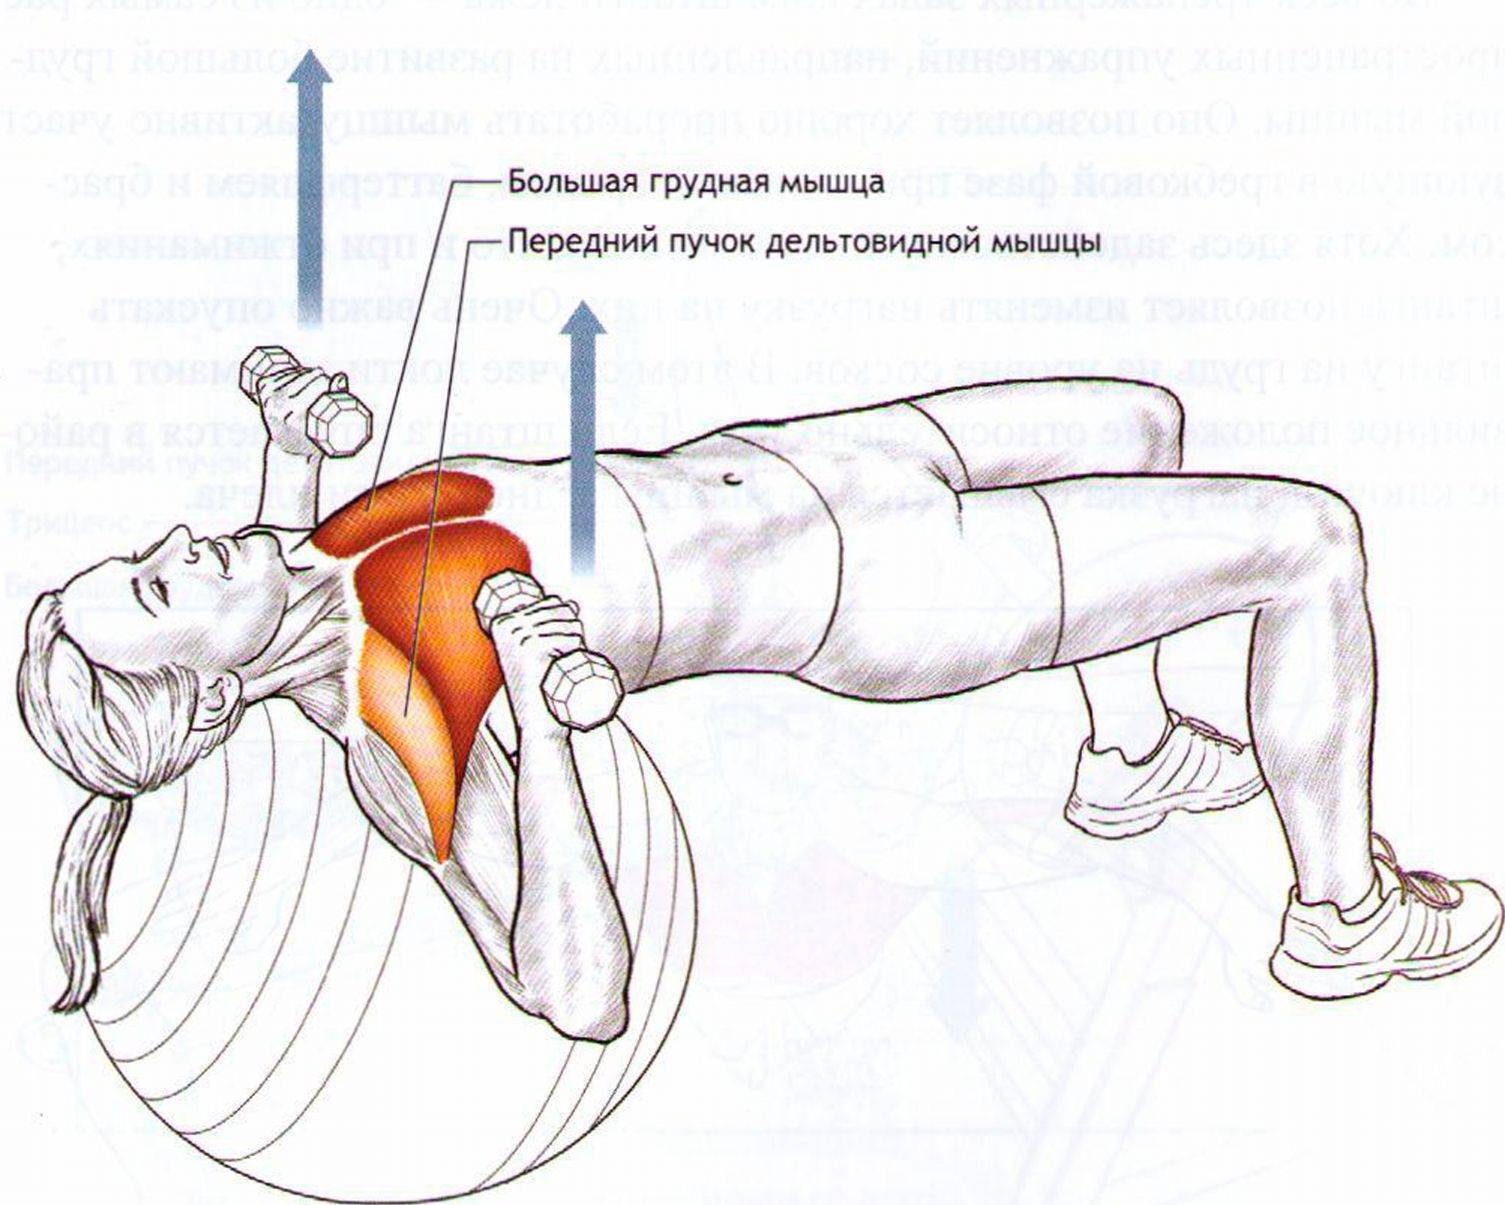 Как накачать мышцы груди (с иллюстрациями) - wikihow